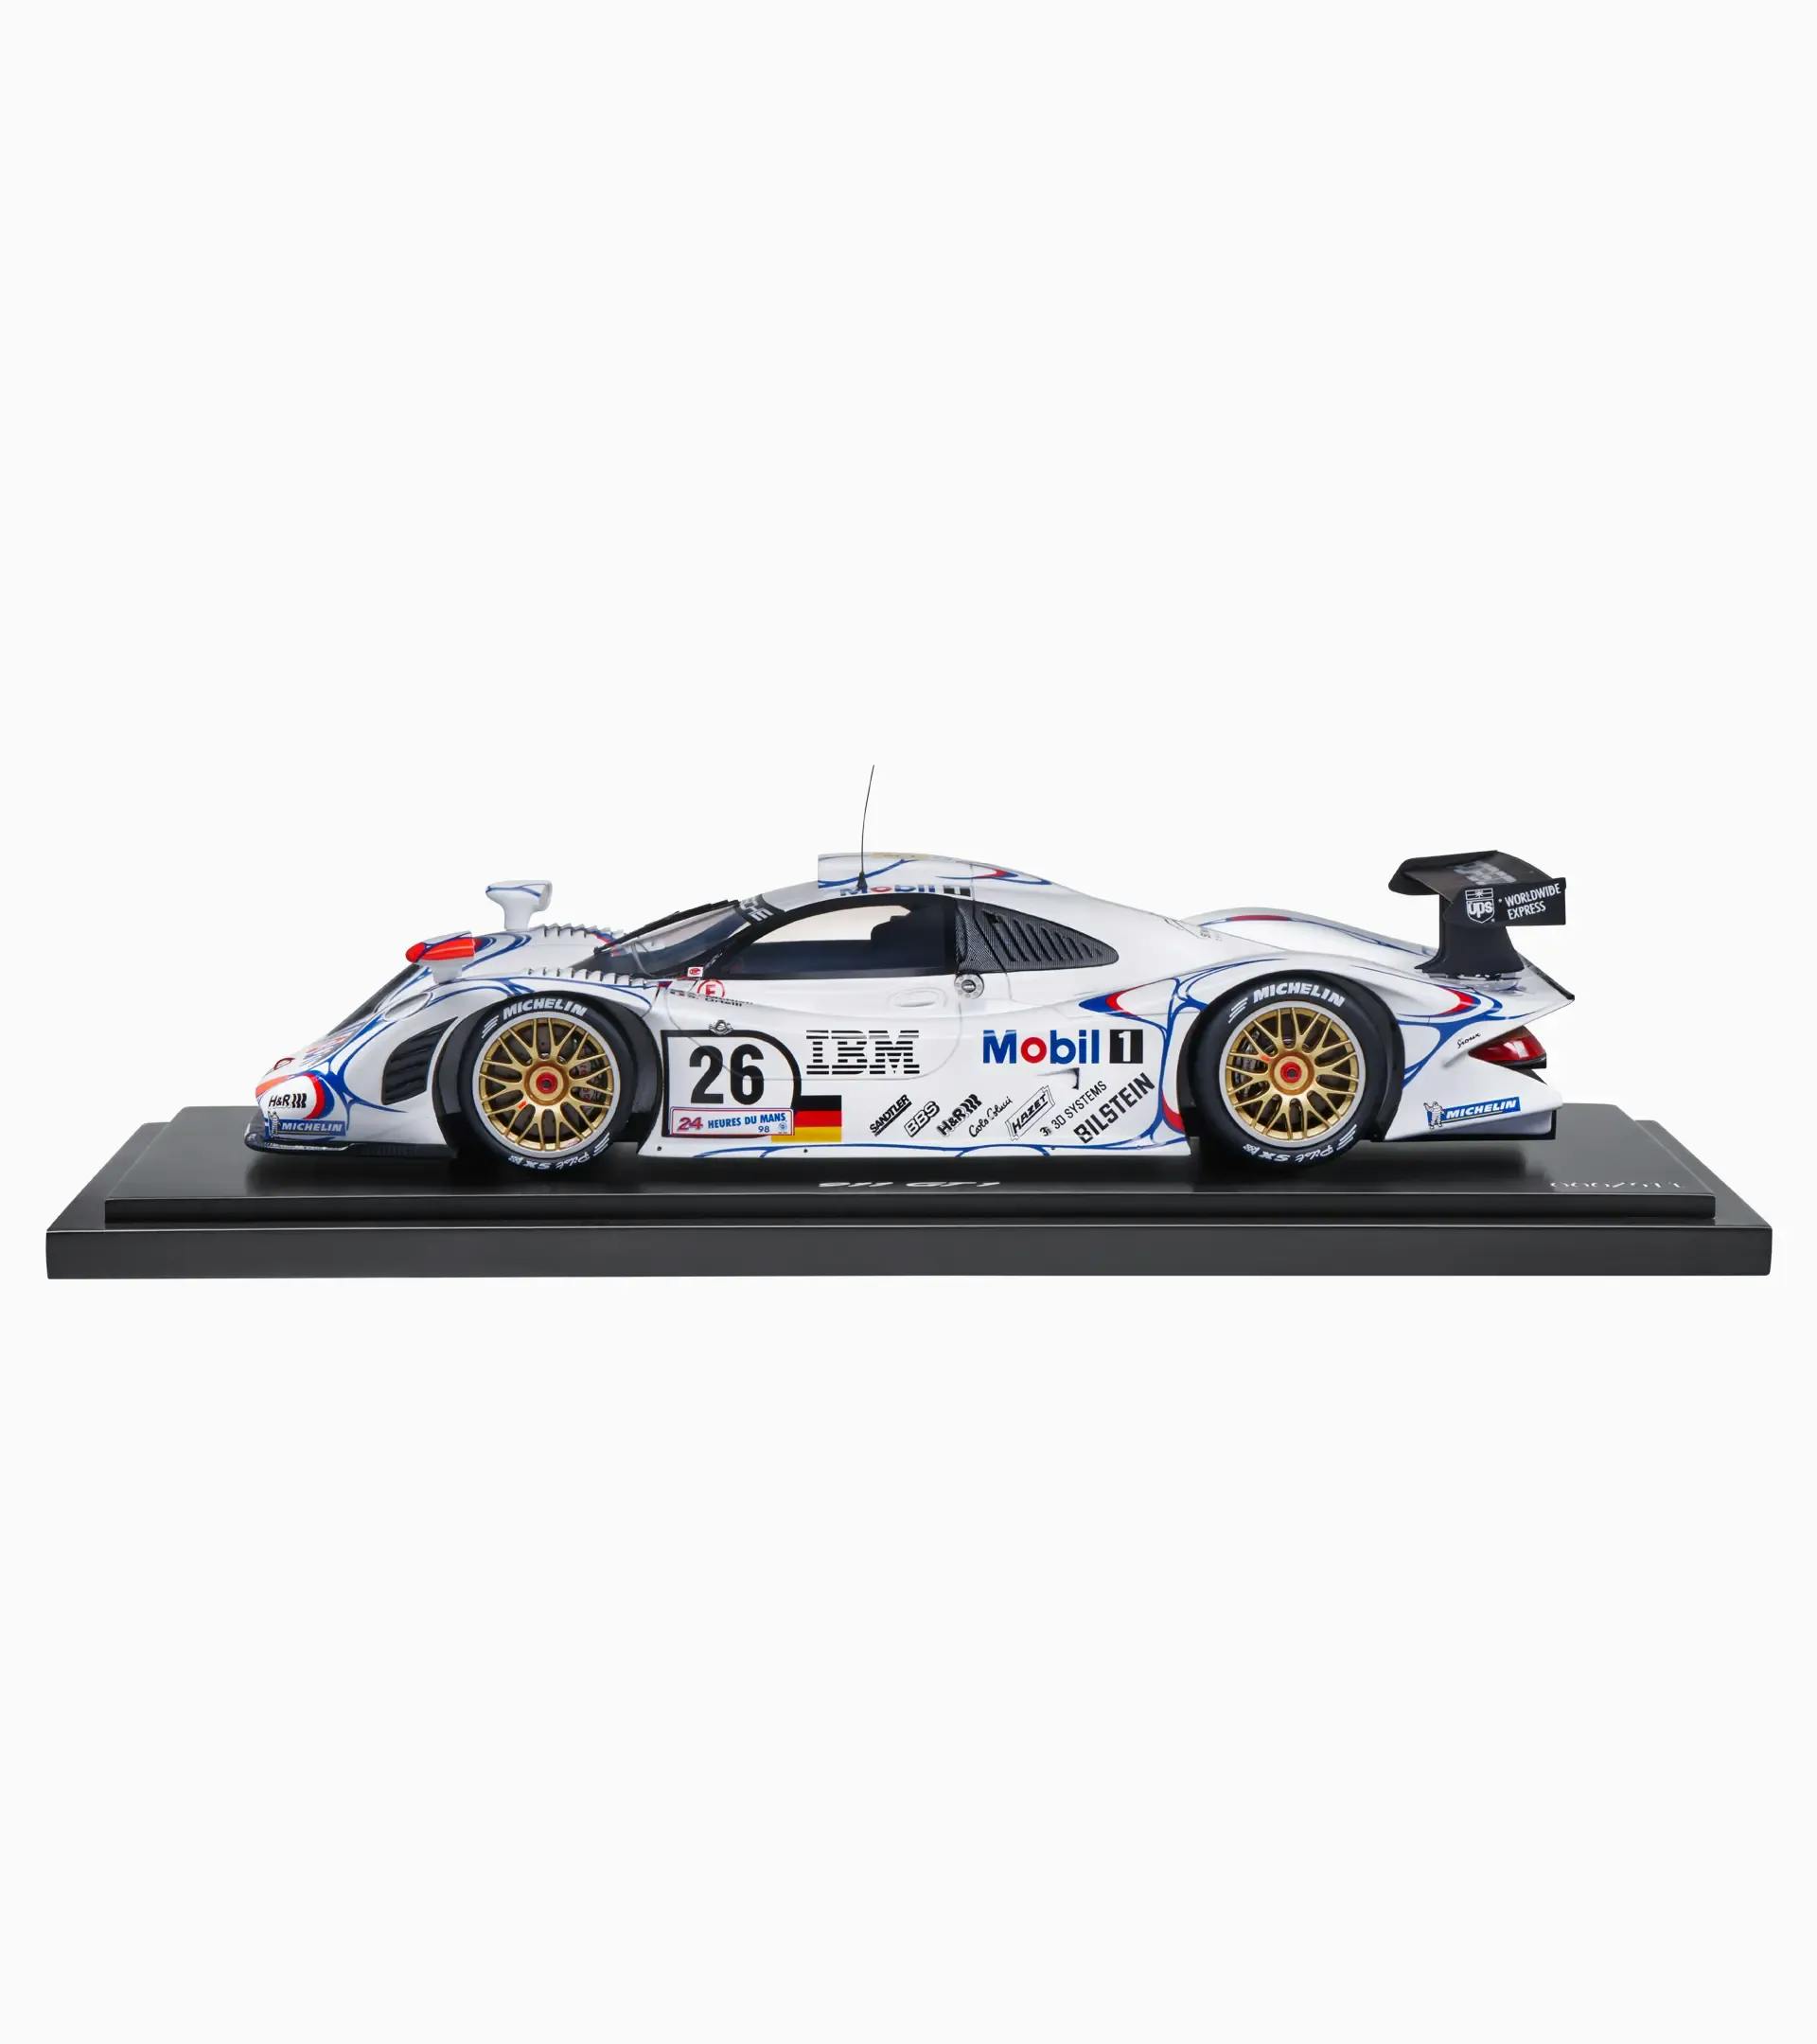 Porsche 911 GT1’98 victorieuse aux 24 Heures du Mans 1998 – Édition limitée 3